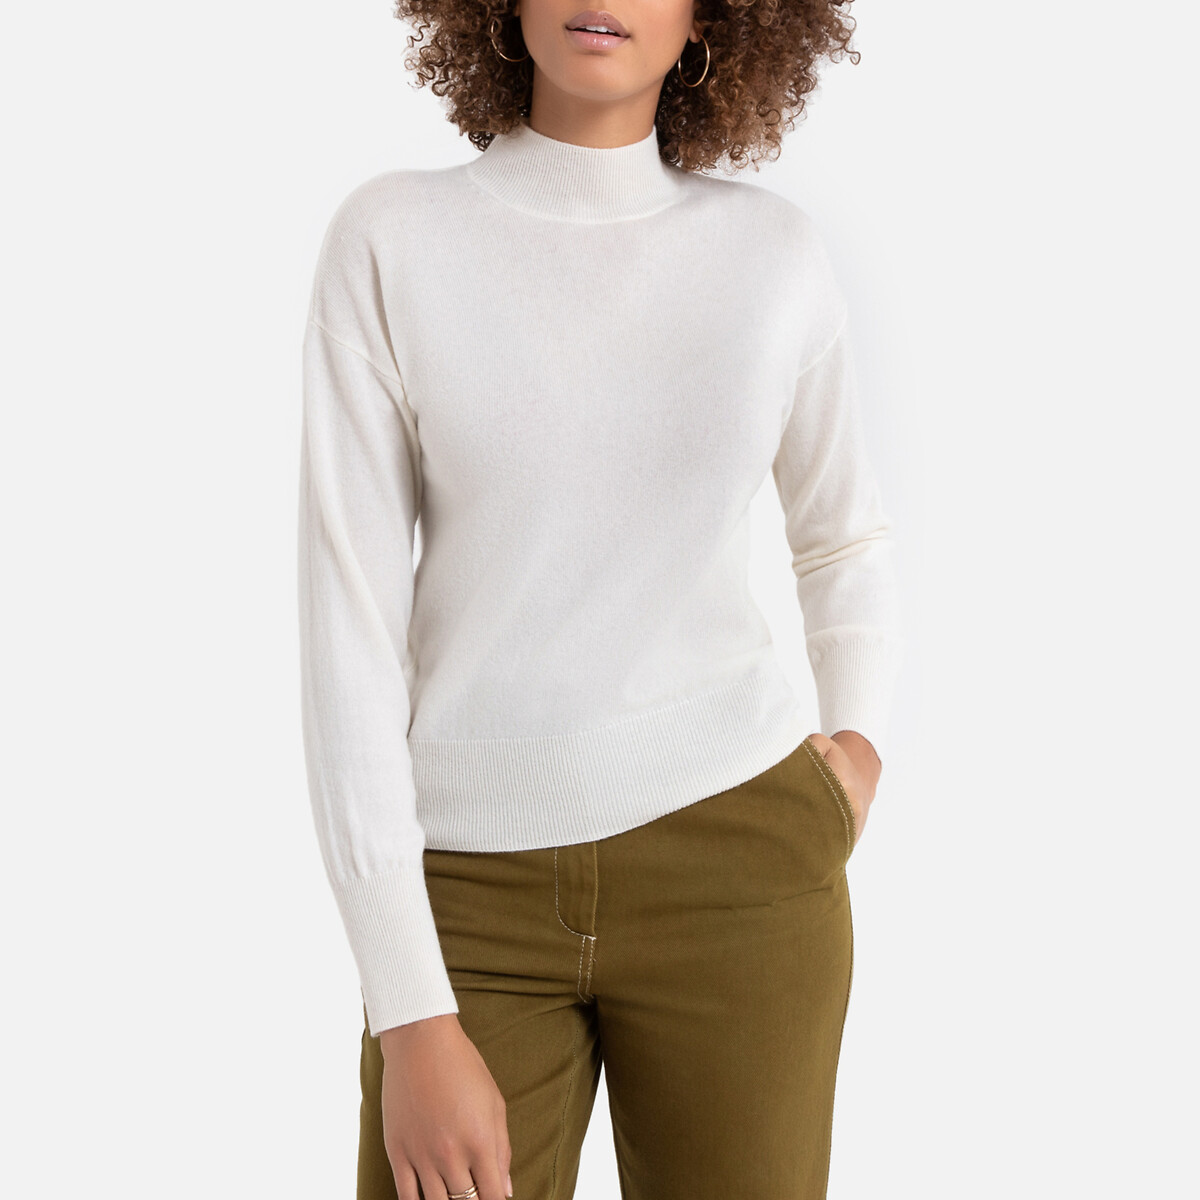 Пуловер La Redoute Из кашемира и шерсти с отворачивающимся воротником S белый, размер S - фото 1